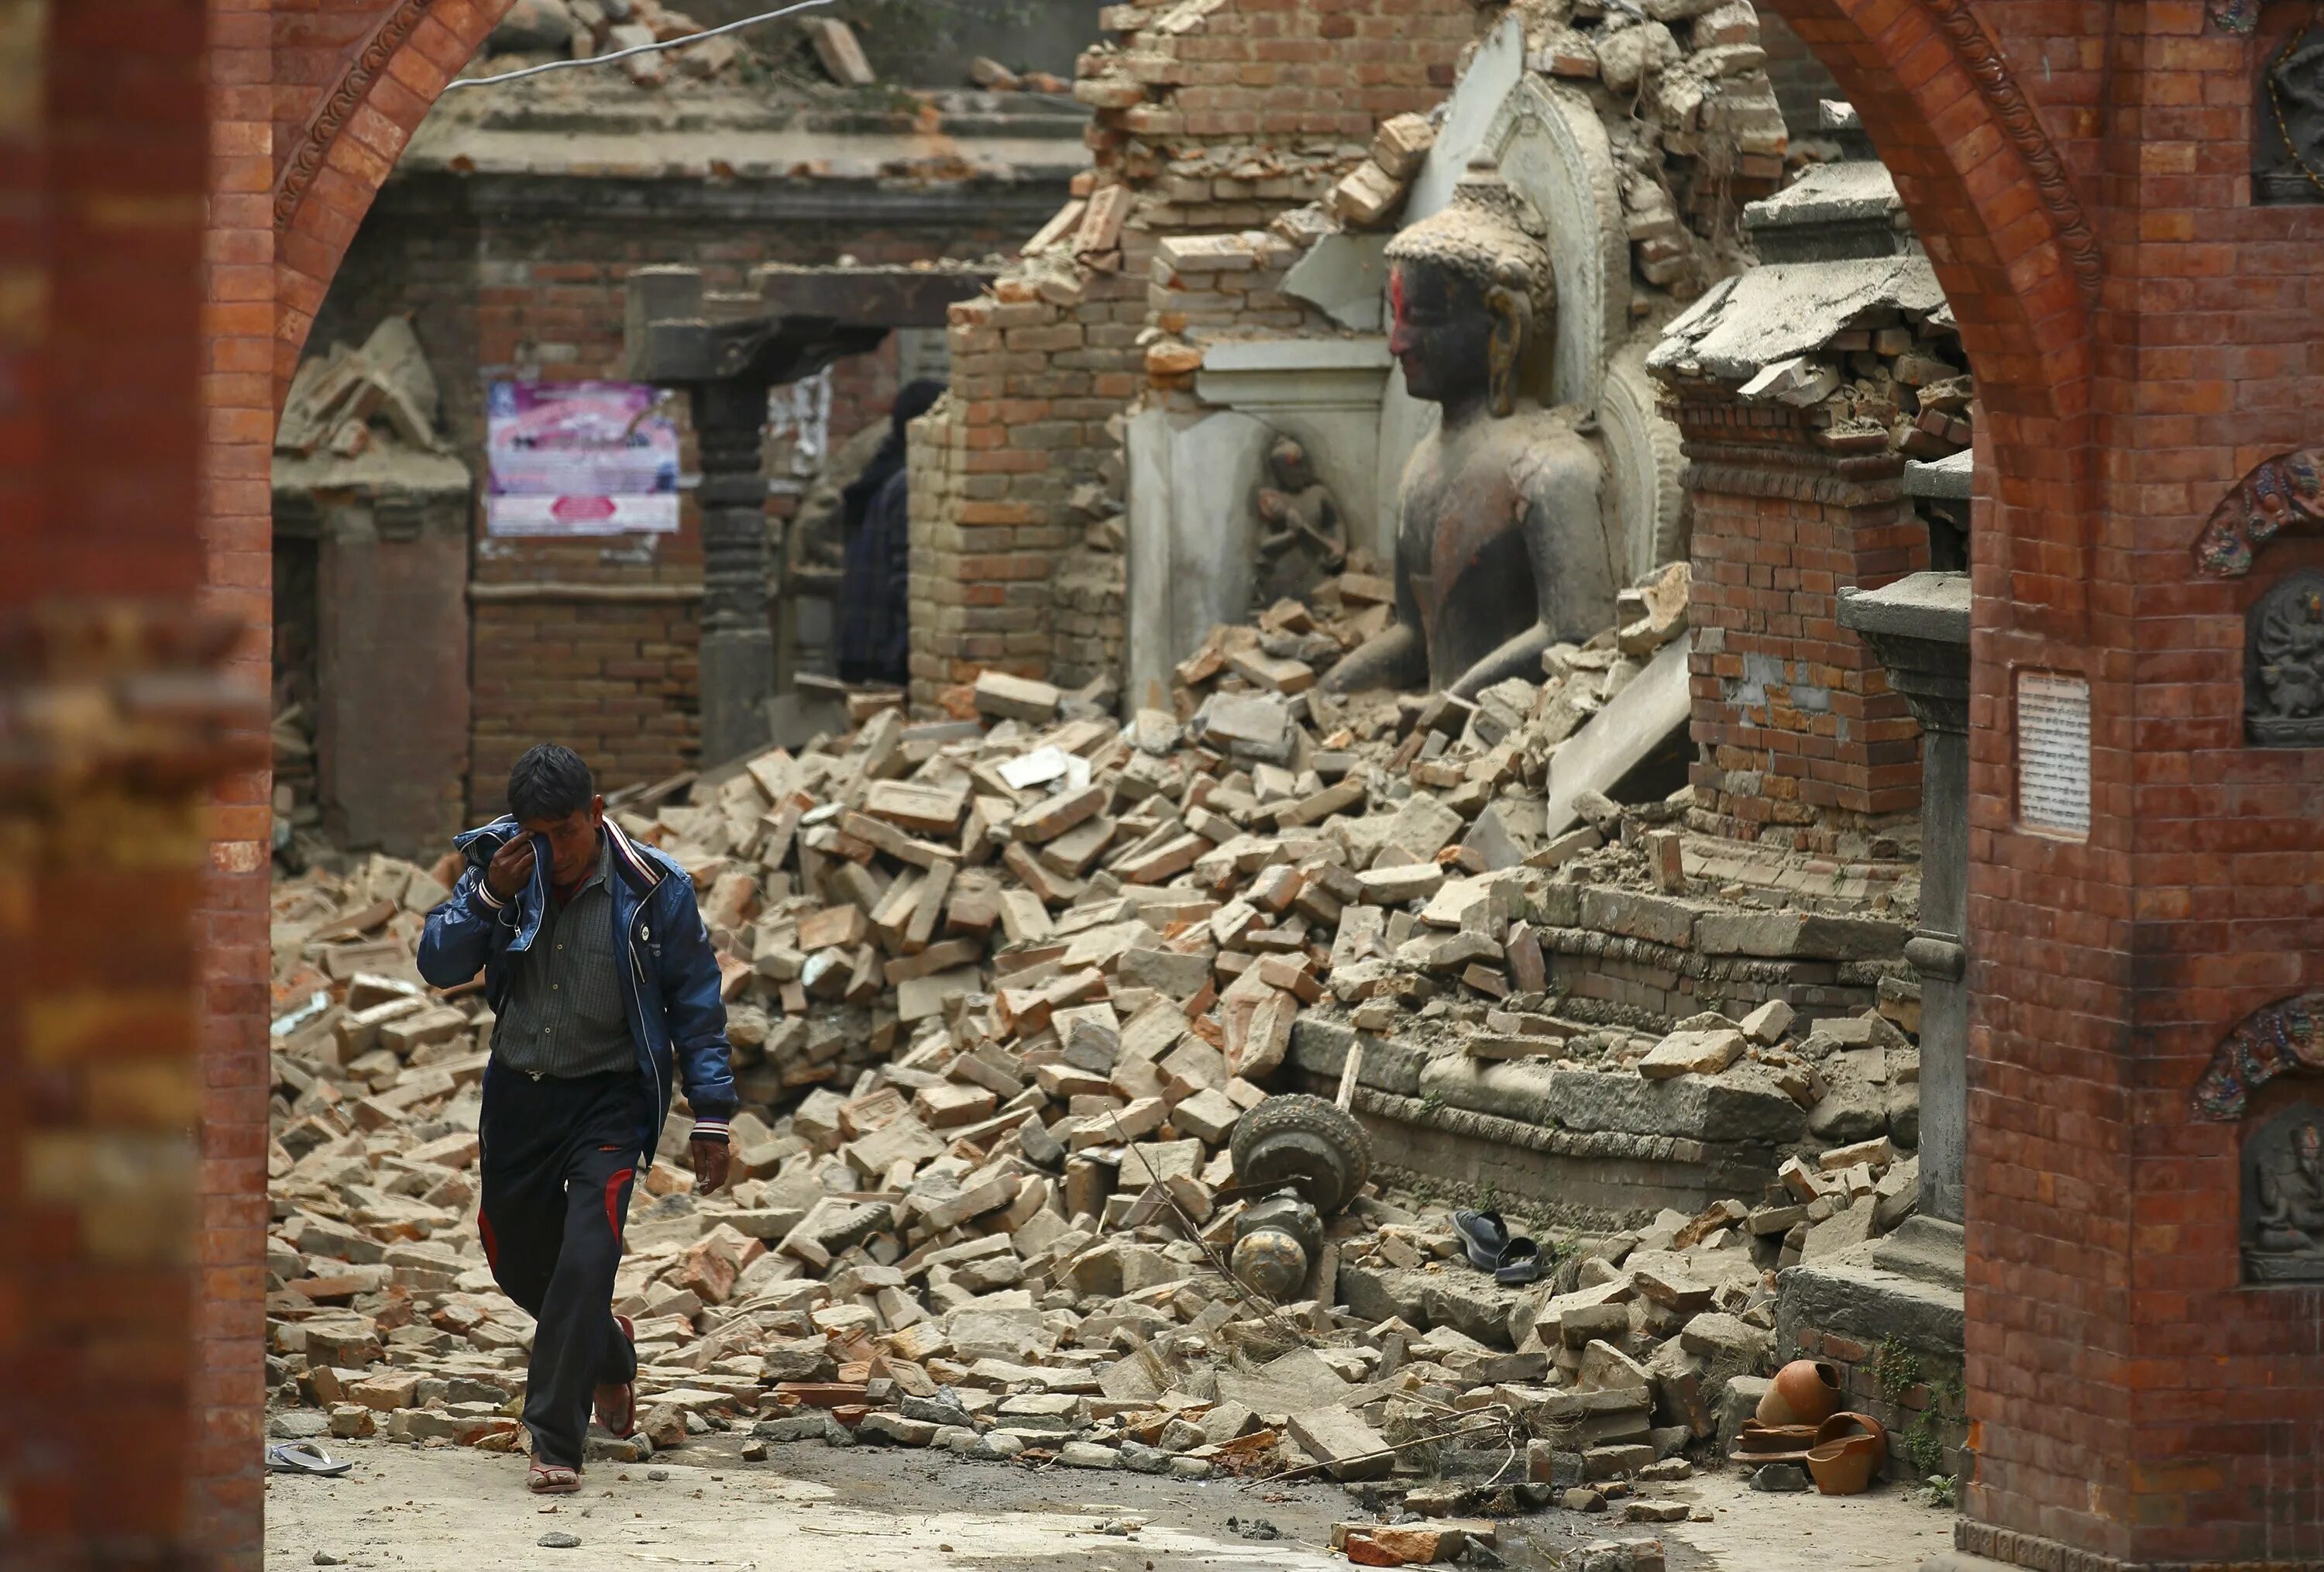 Землетрясение в гори. Землетрясение в Непале 2015. Катманду 2015 год землетрясение. Непал 2015 землетрясение фото. Непал 2015 землетрясение жертвы.